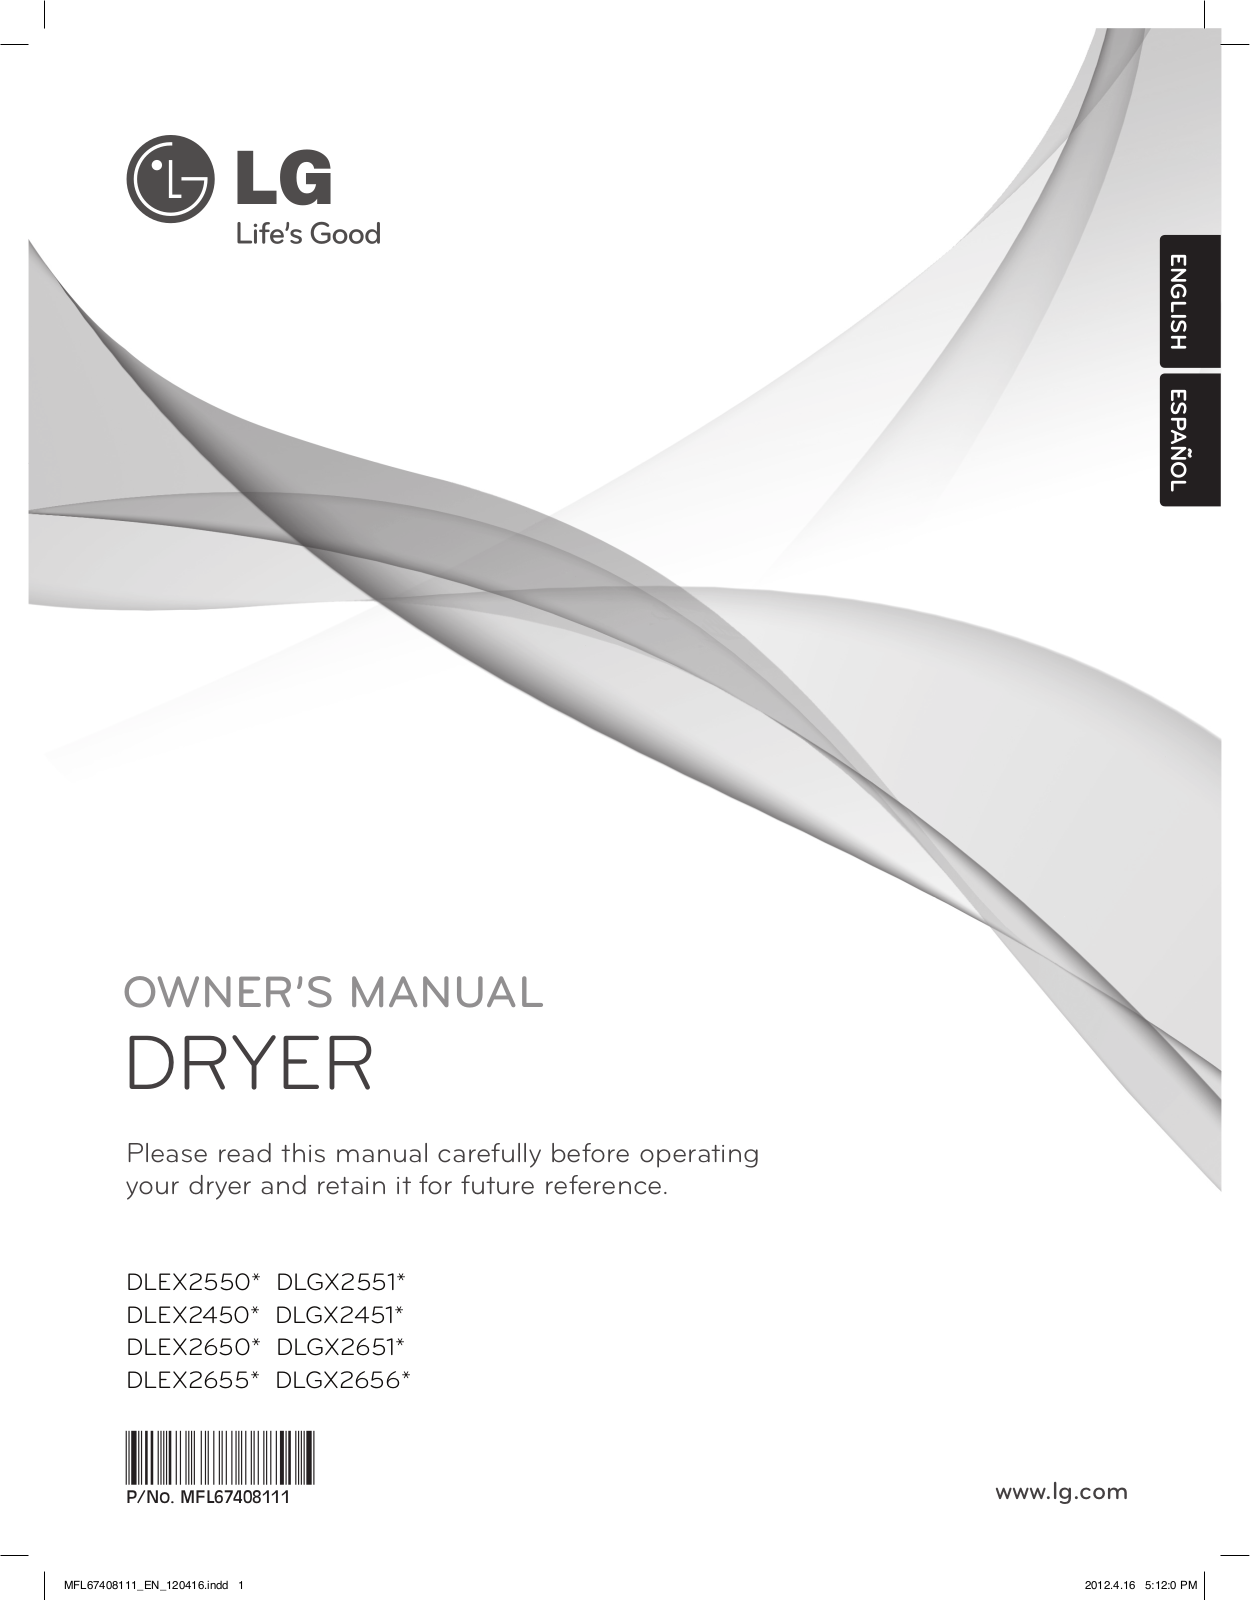 LG DLGX2656V User Manual